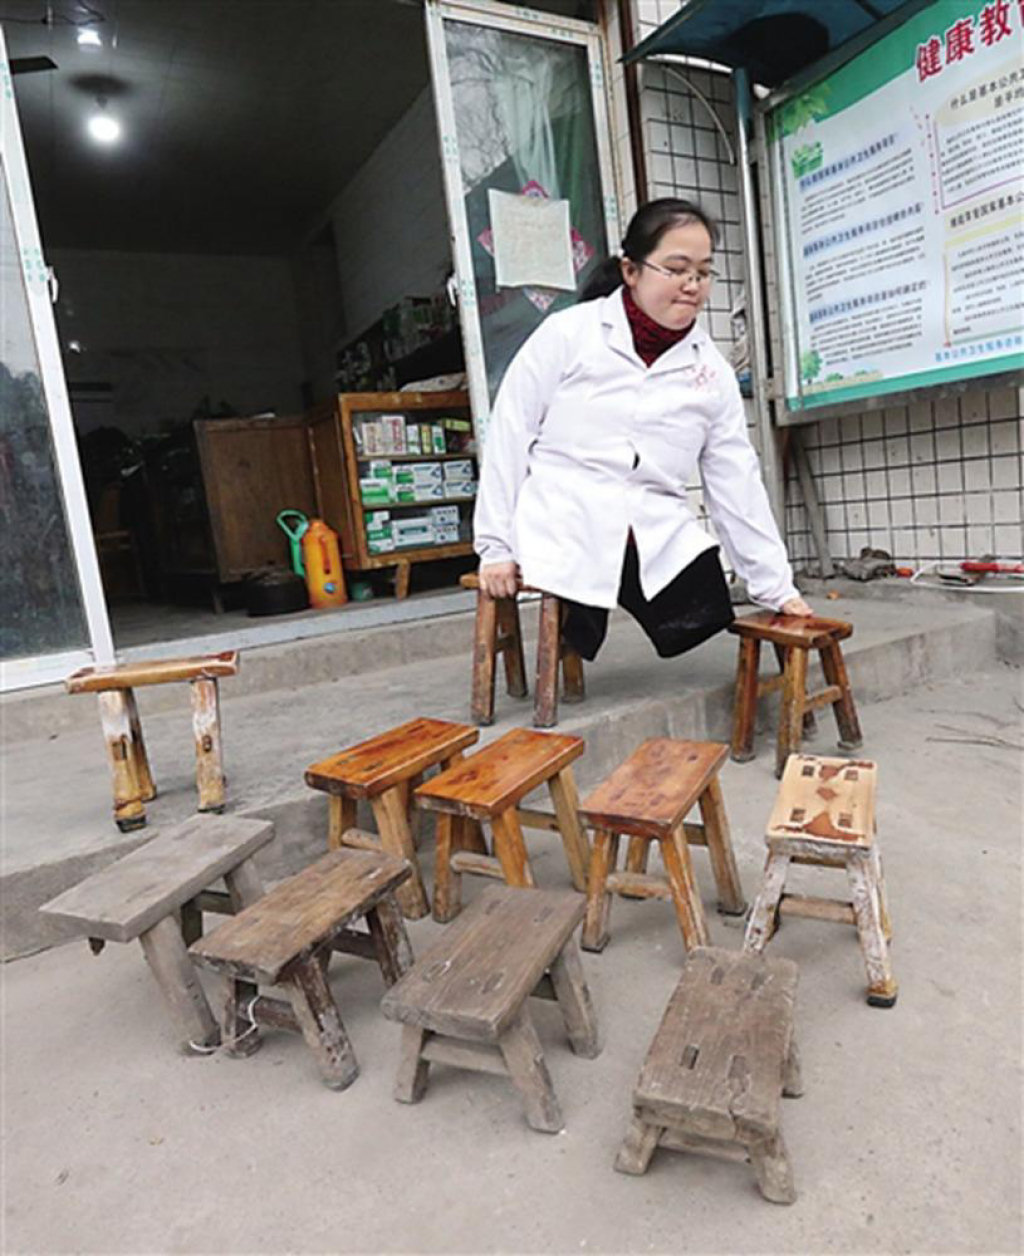 Médica sem pernas desgasta 24 banquetas de madeira em 15 anos atendendo chamados médicos 03